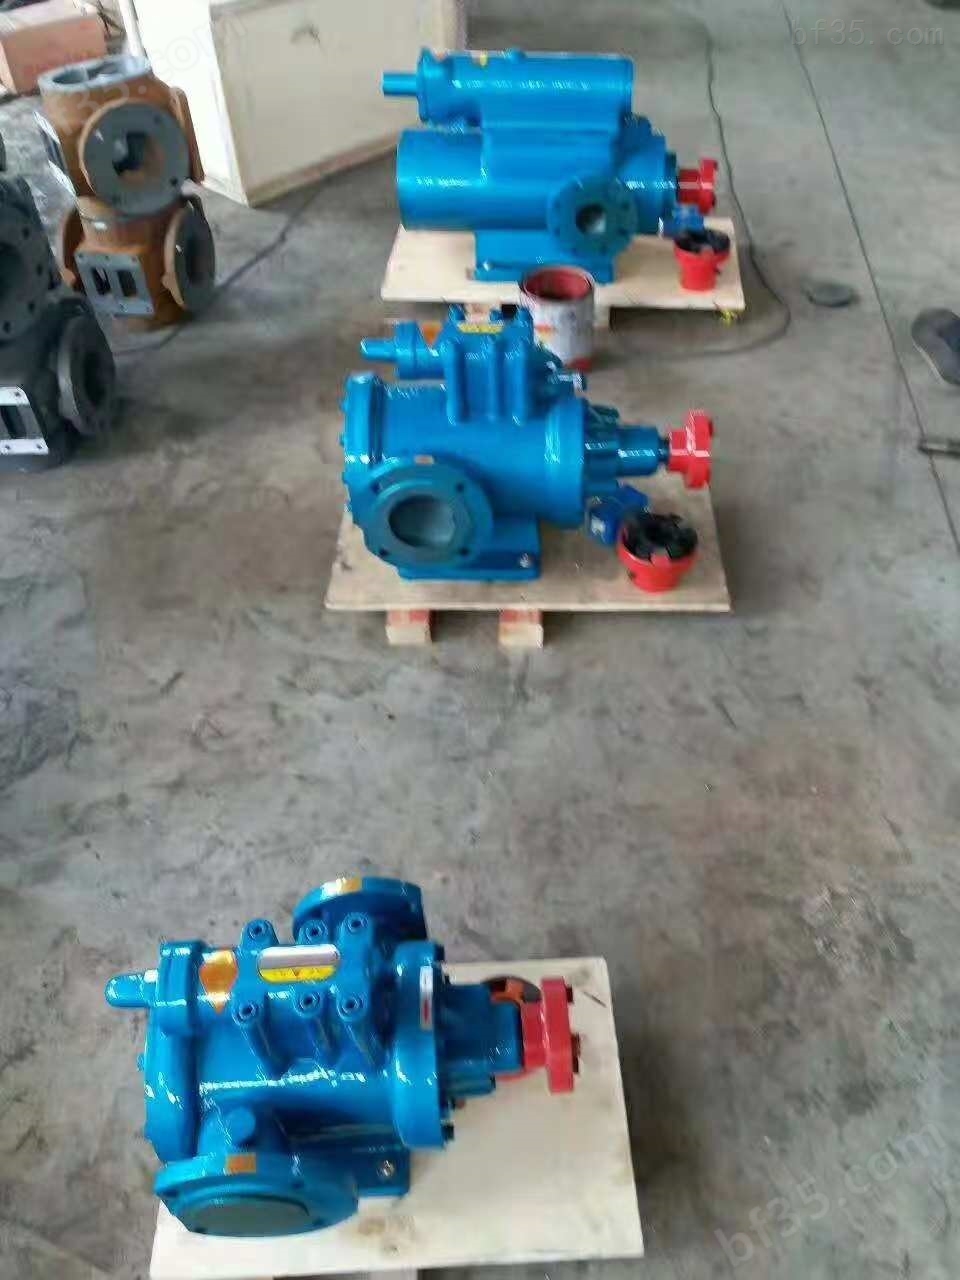 工业用三螺杆泵 罐区油泵 润滑油卸车泵